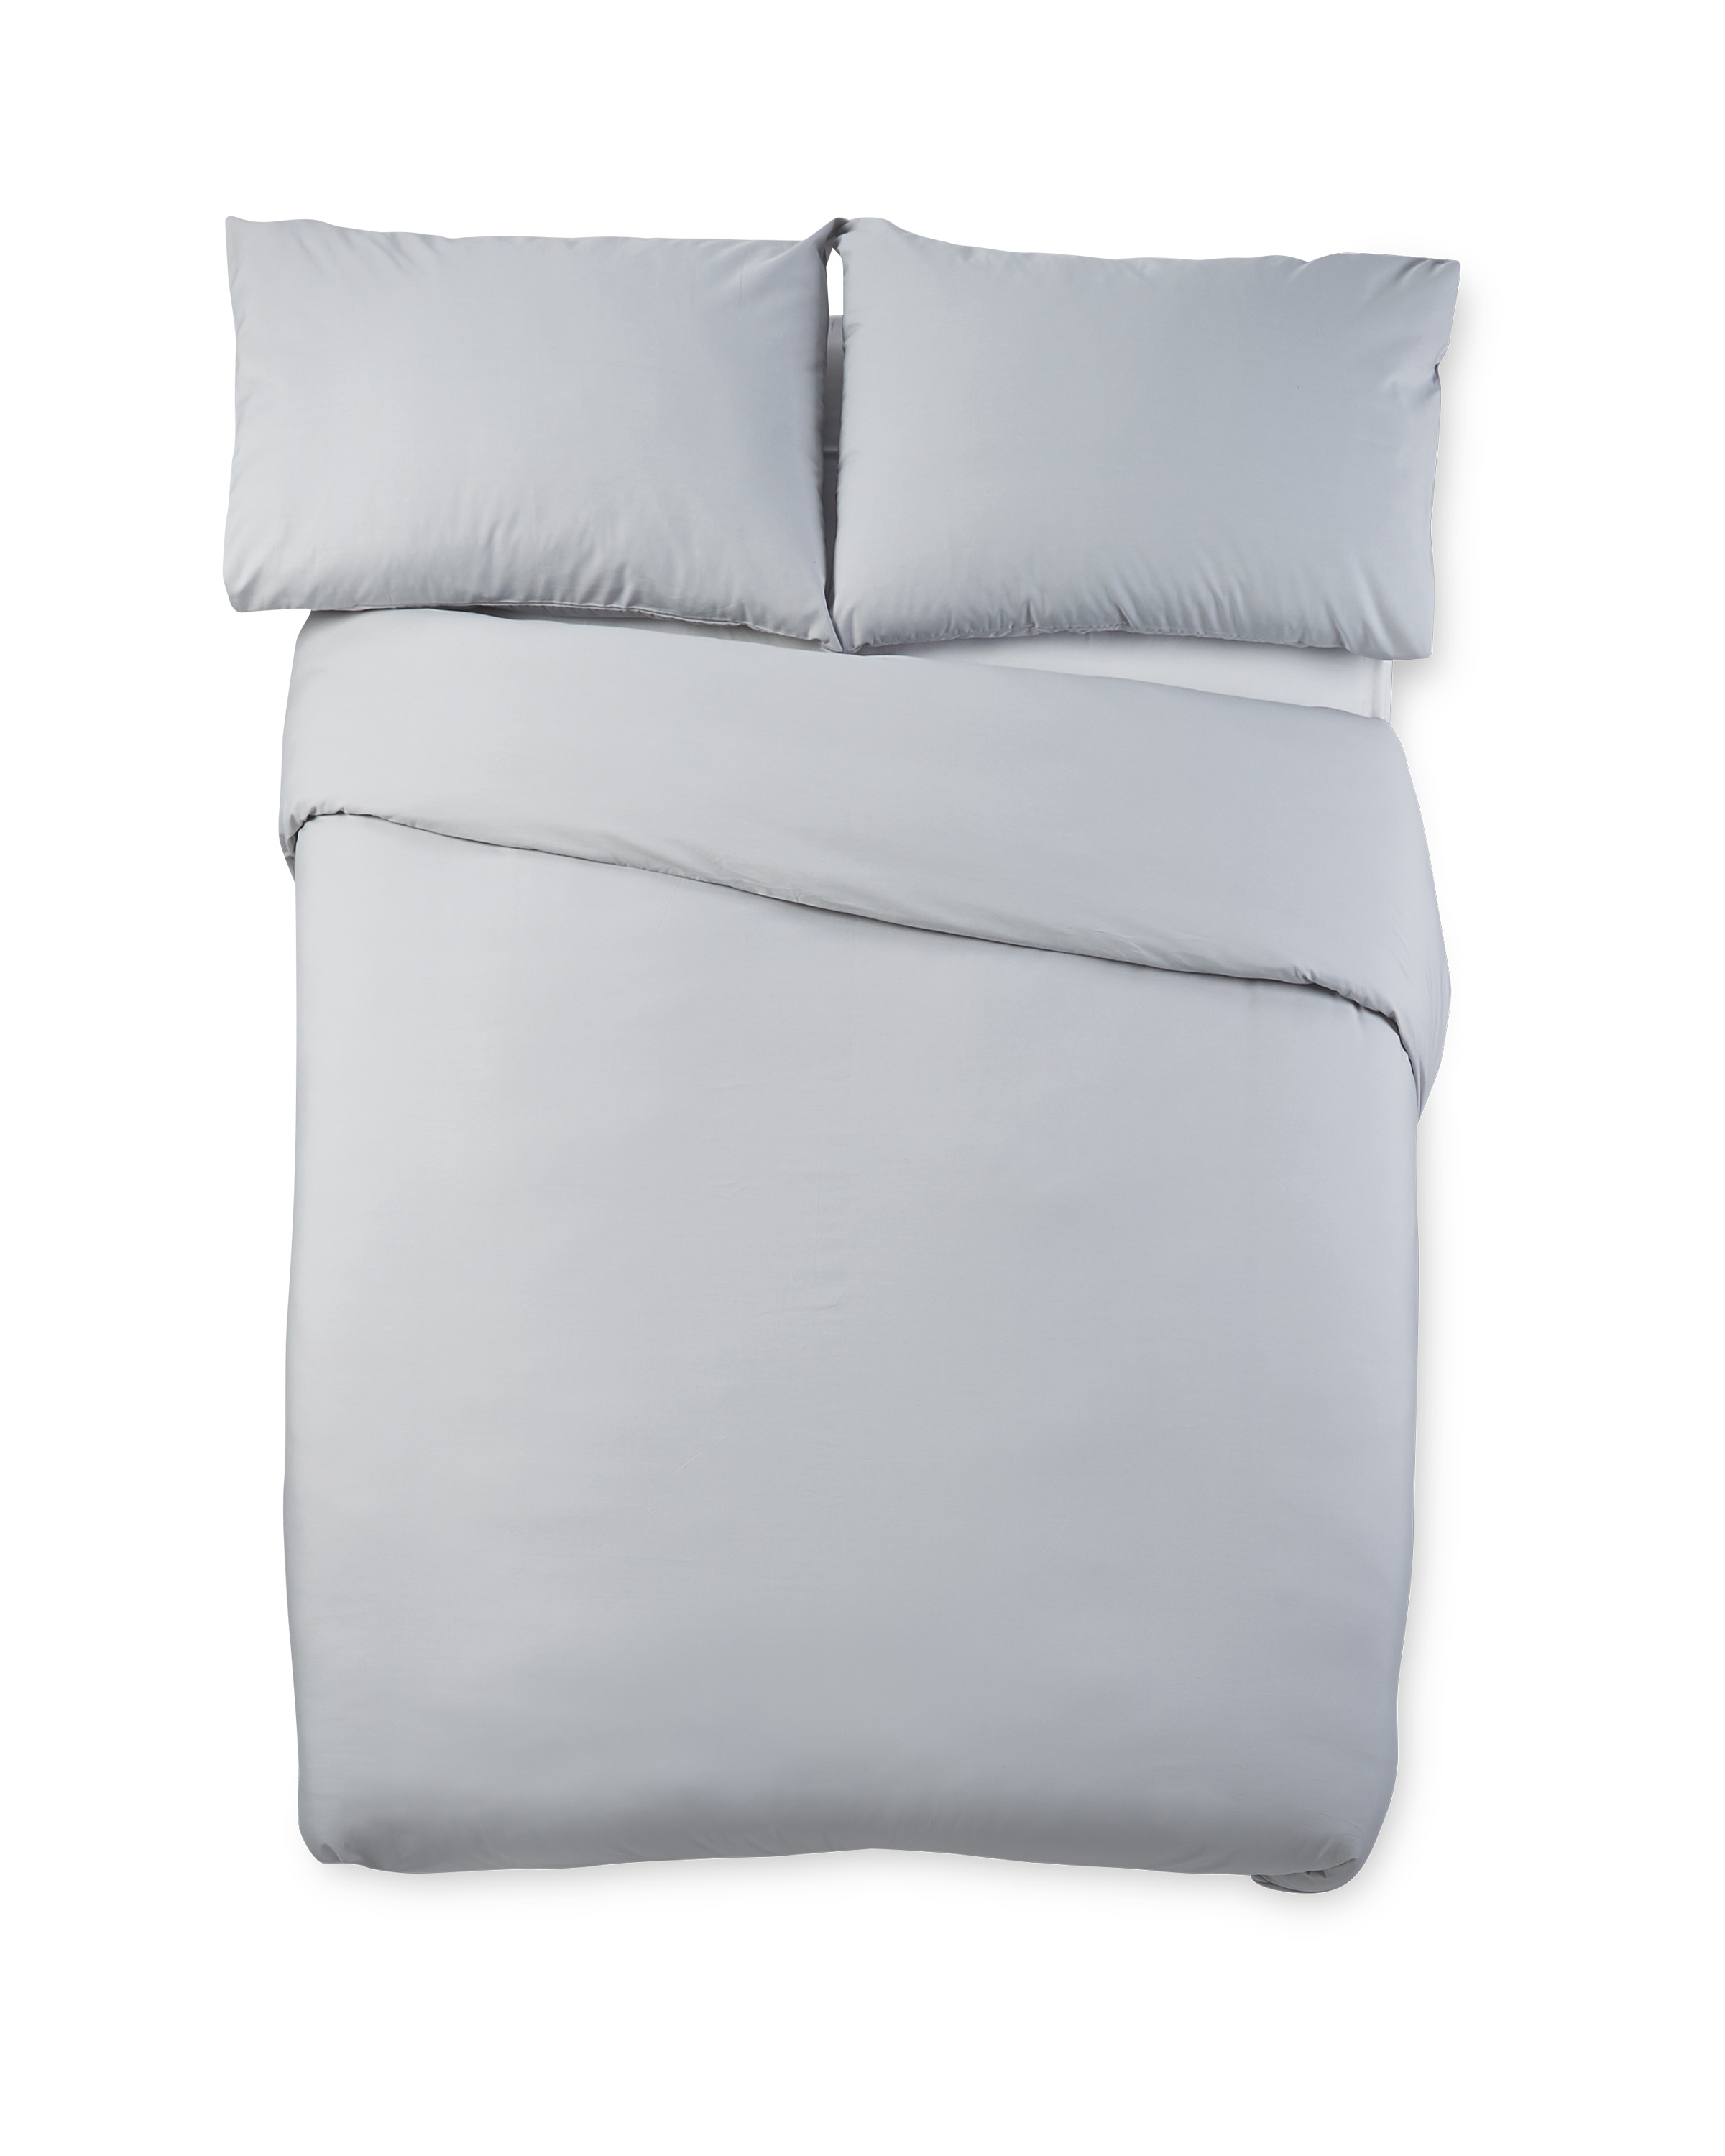 Grey Cooling Super King Duvet Set Aldi Uk, What Size Duvet Do I Need For A Super King Bed